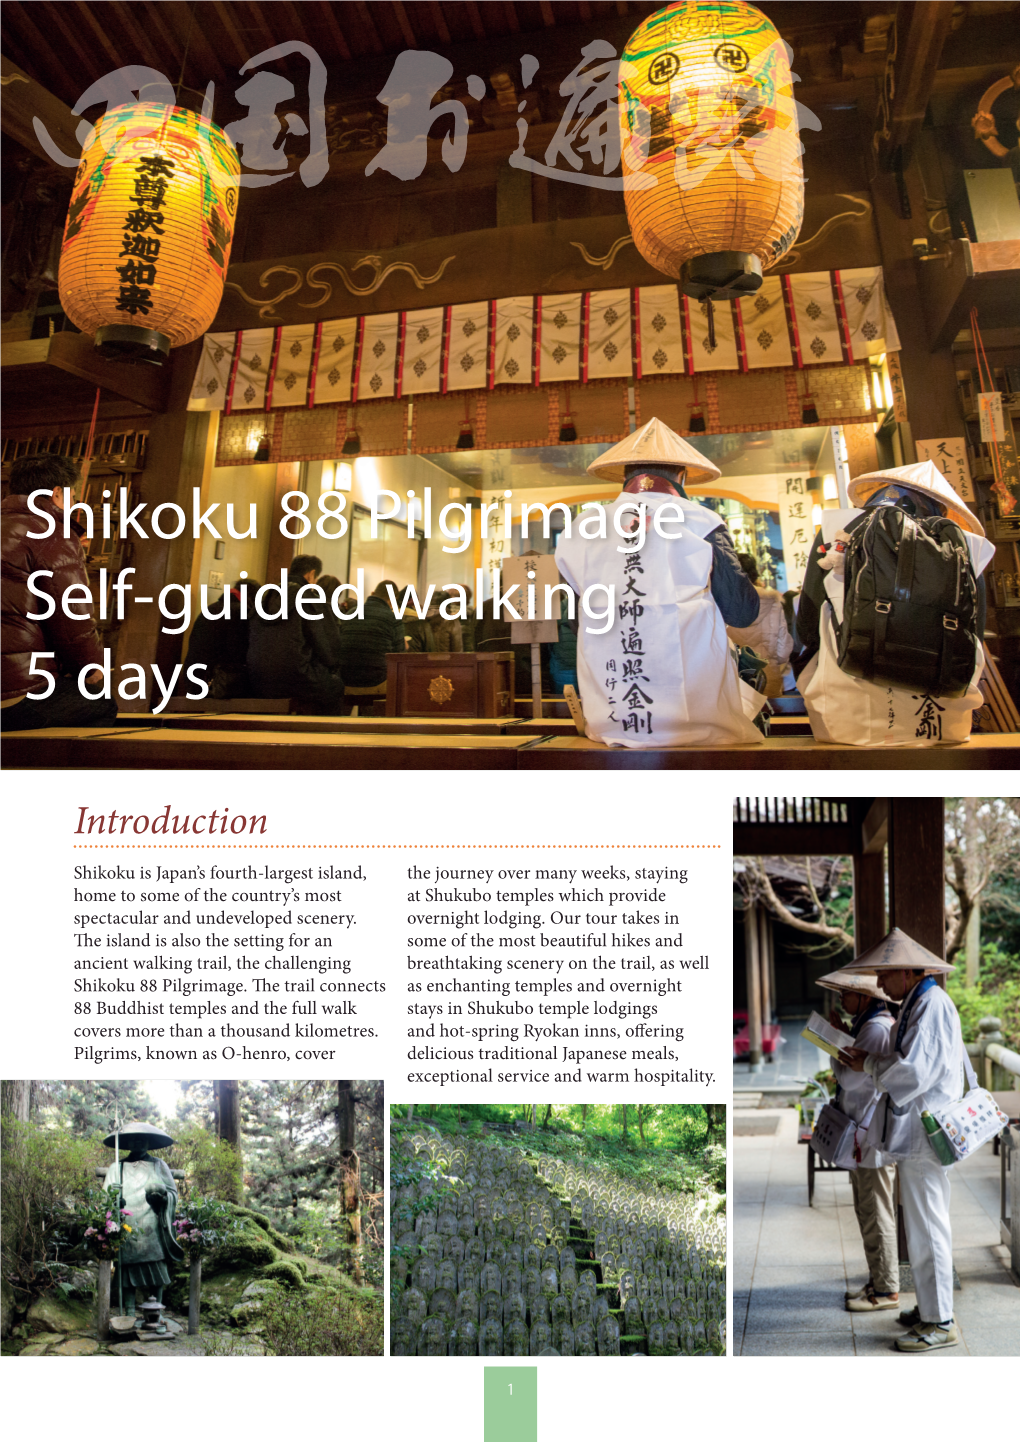 Shikoku 88 Pilgrimage Self-Guided Walking 5 Days